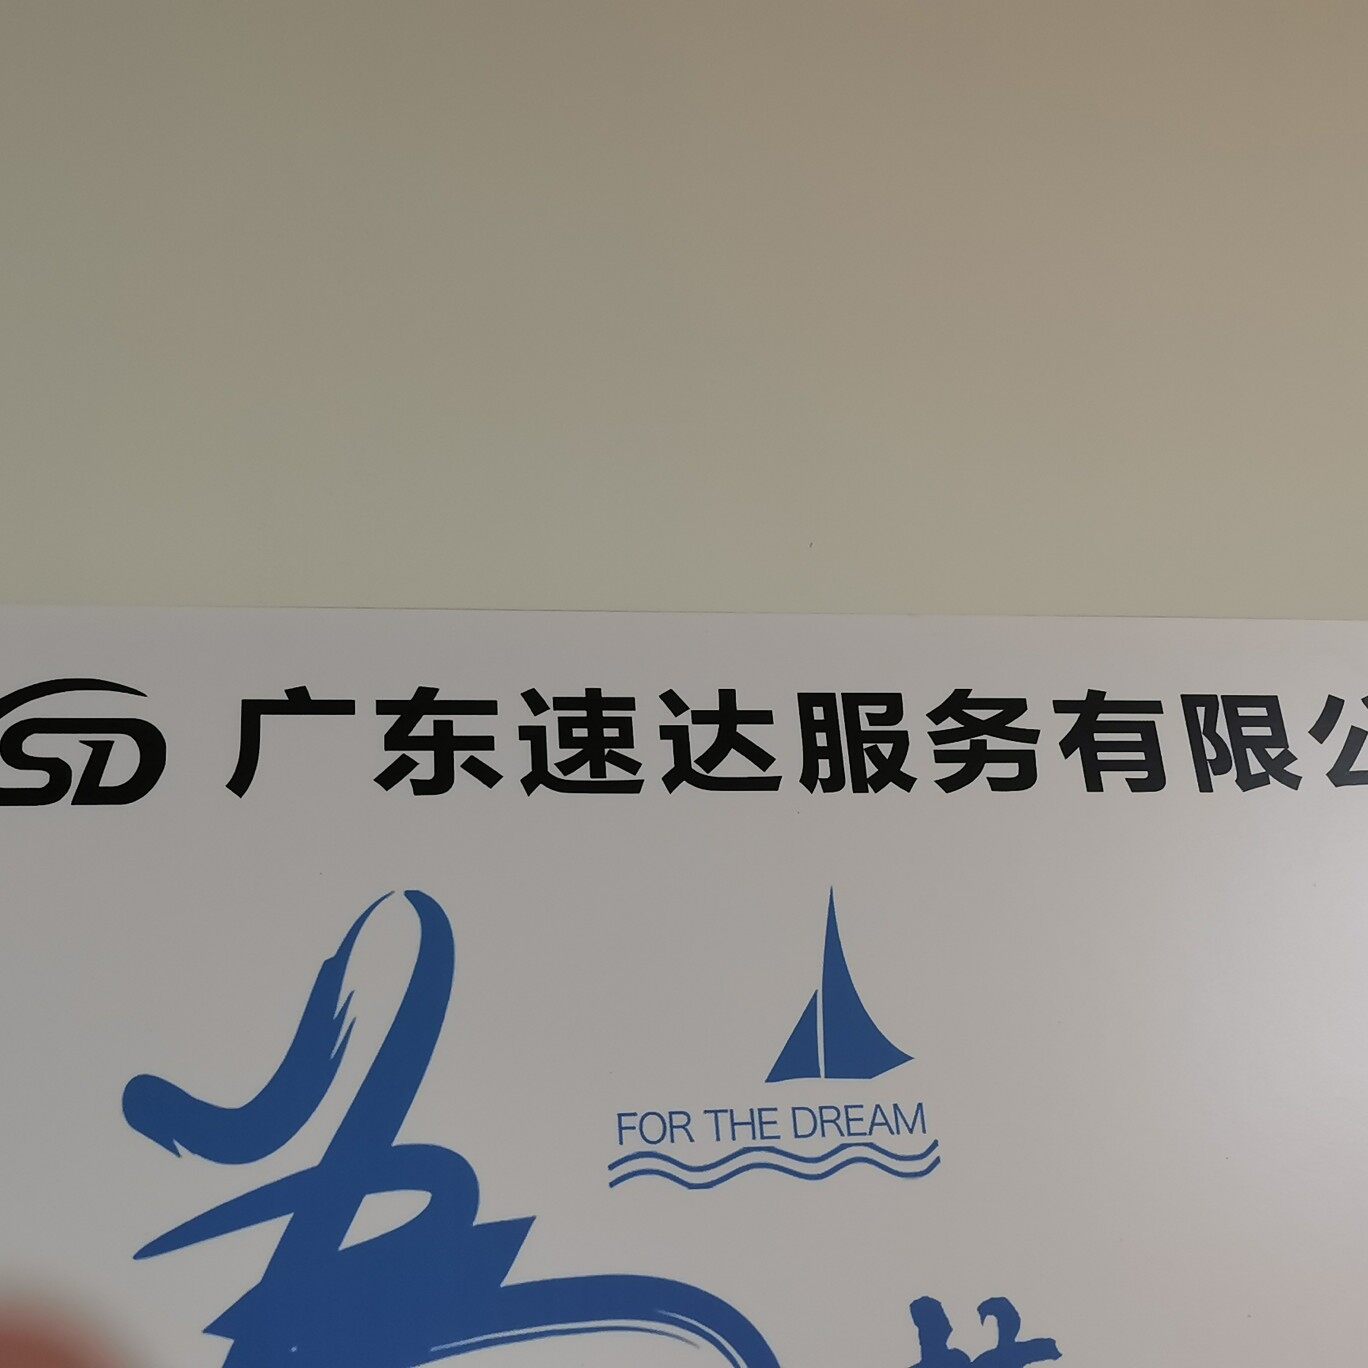 广东速达服务有限公司logo